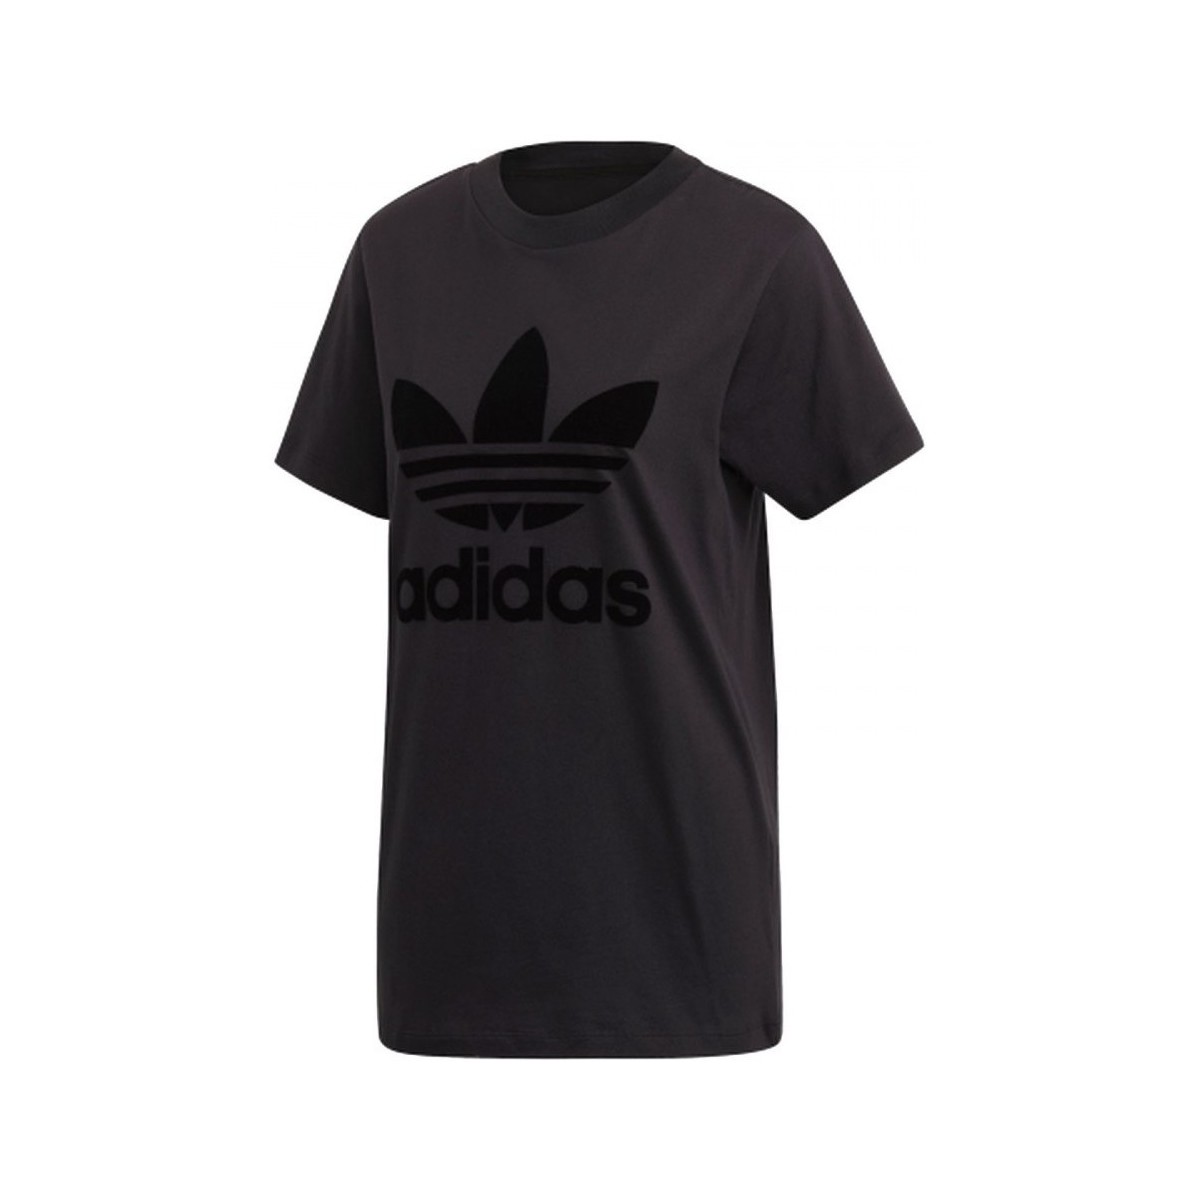 Textiel Dames T-shirts & Polo’s adidas Originals T-Shirt Zwart